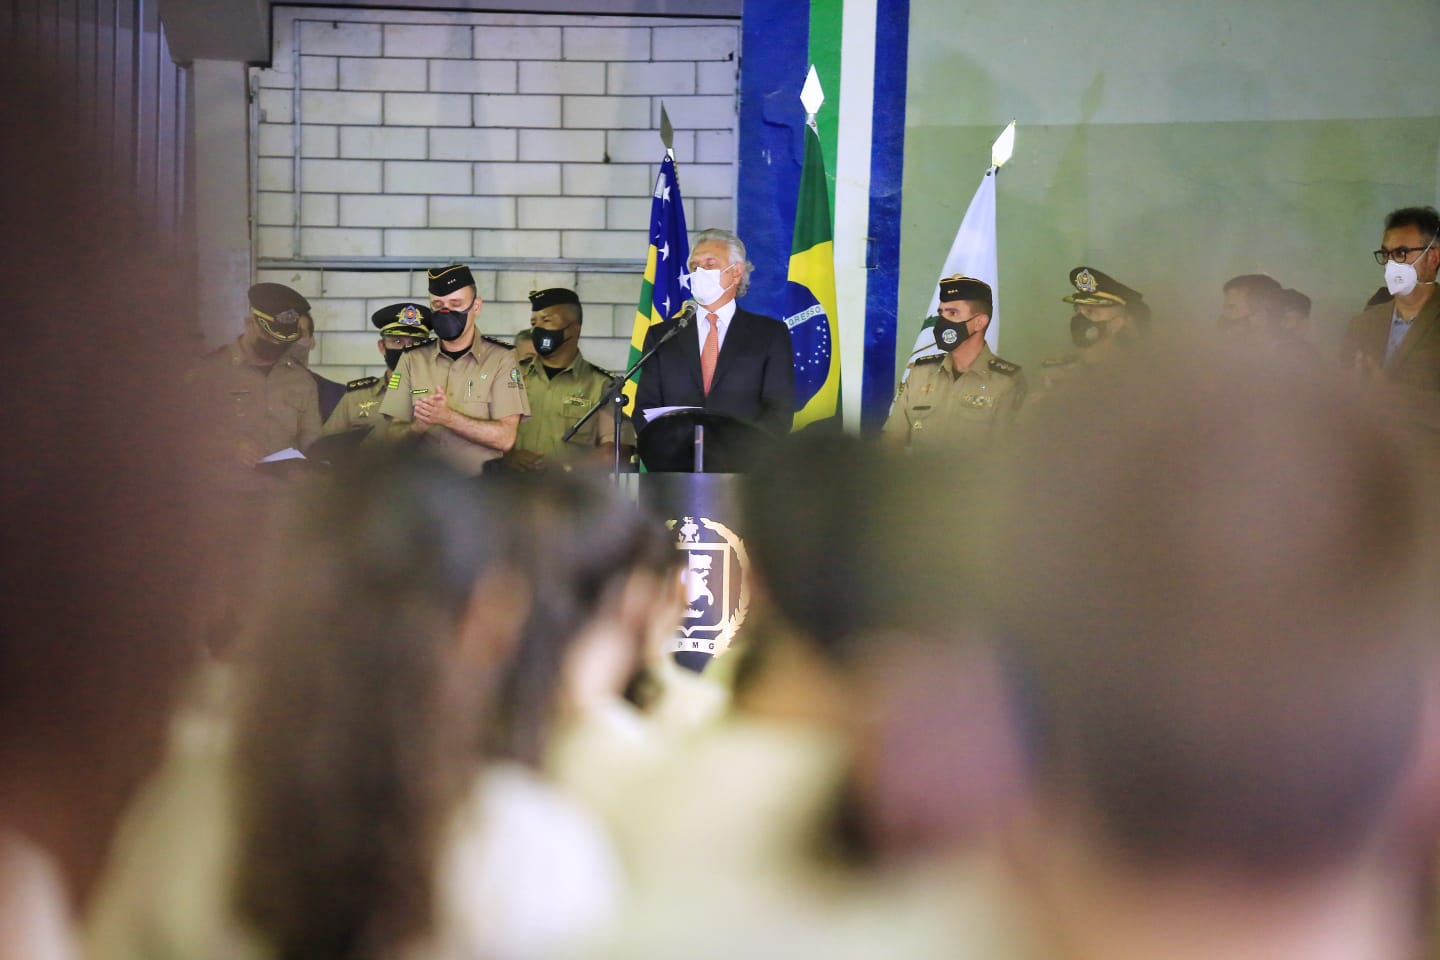 "No nosso governo o dinheiro apareceu", diz Caiado em inauguração de reformas no Colégio Hugo de Carvalho - caiado reformas hugo carvalho02